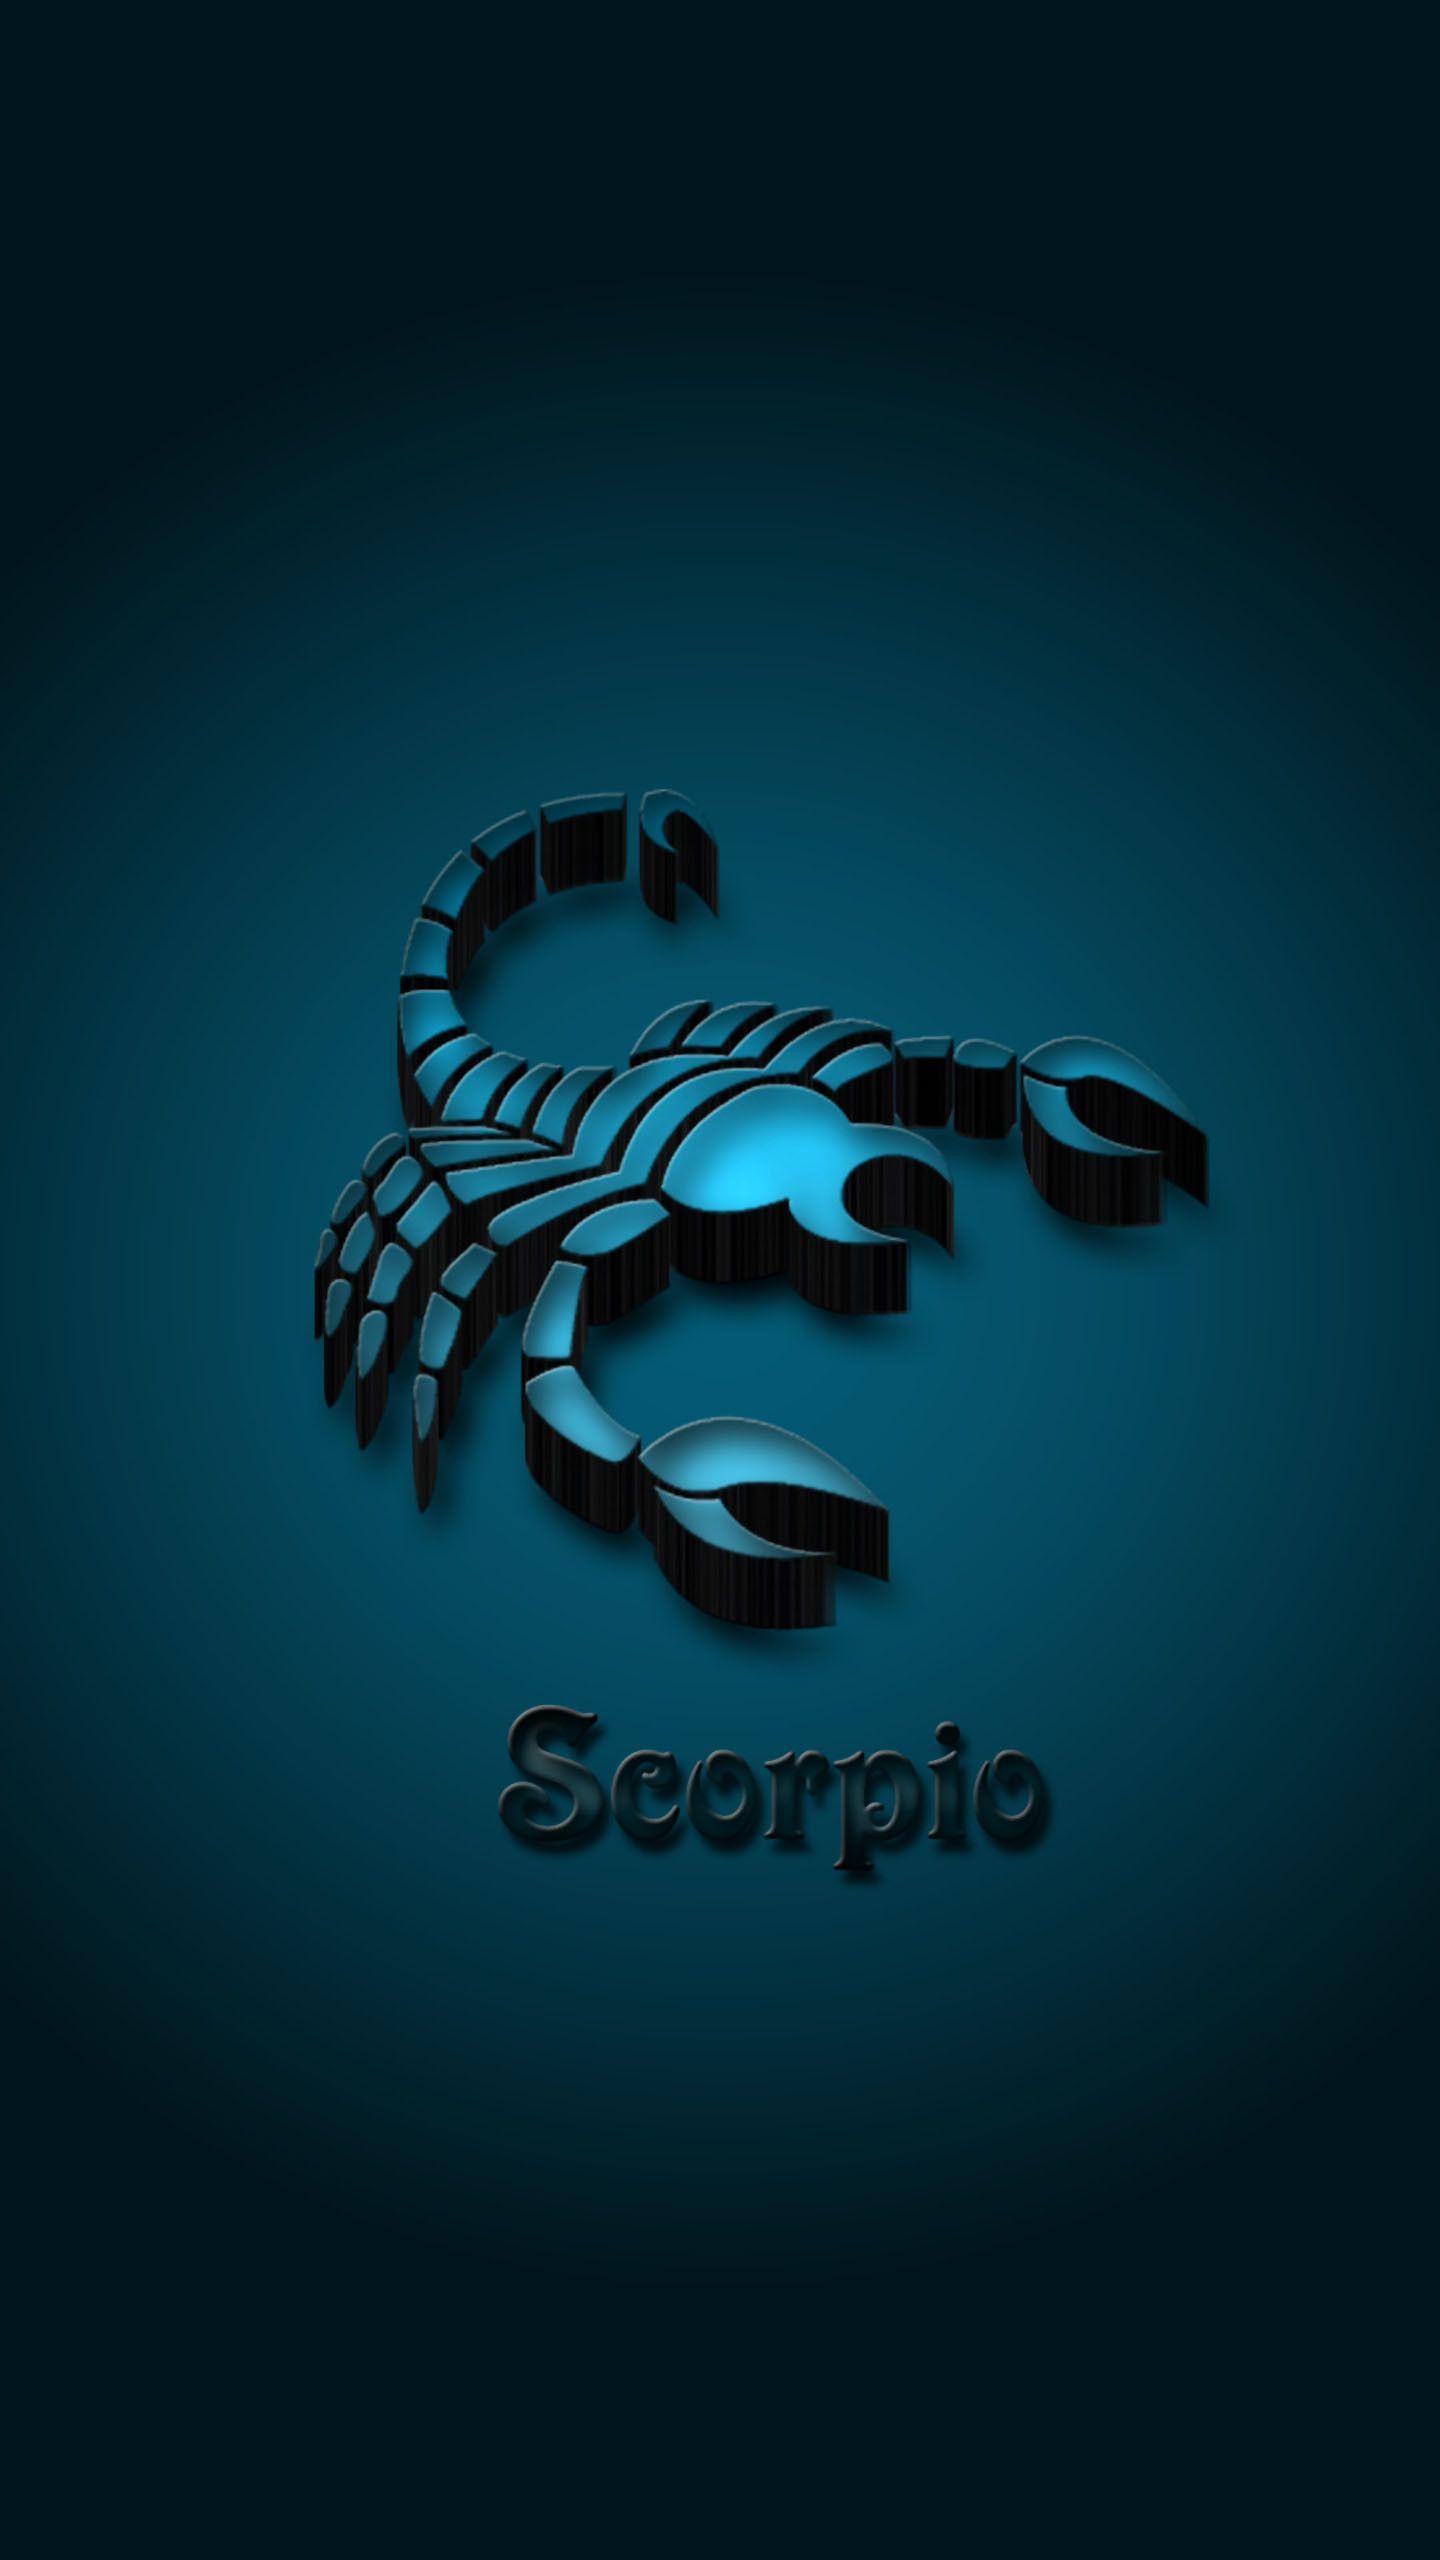 Scorpio Zodiac Sign Hd Wallpaper